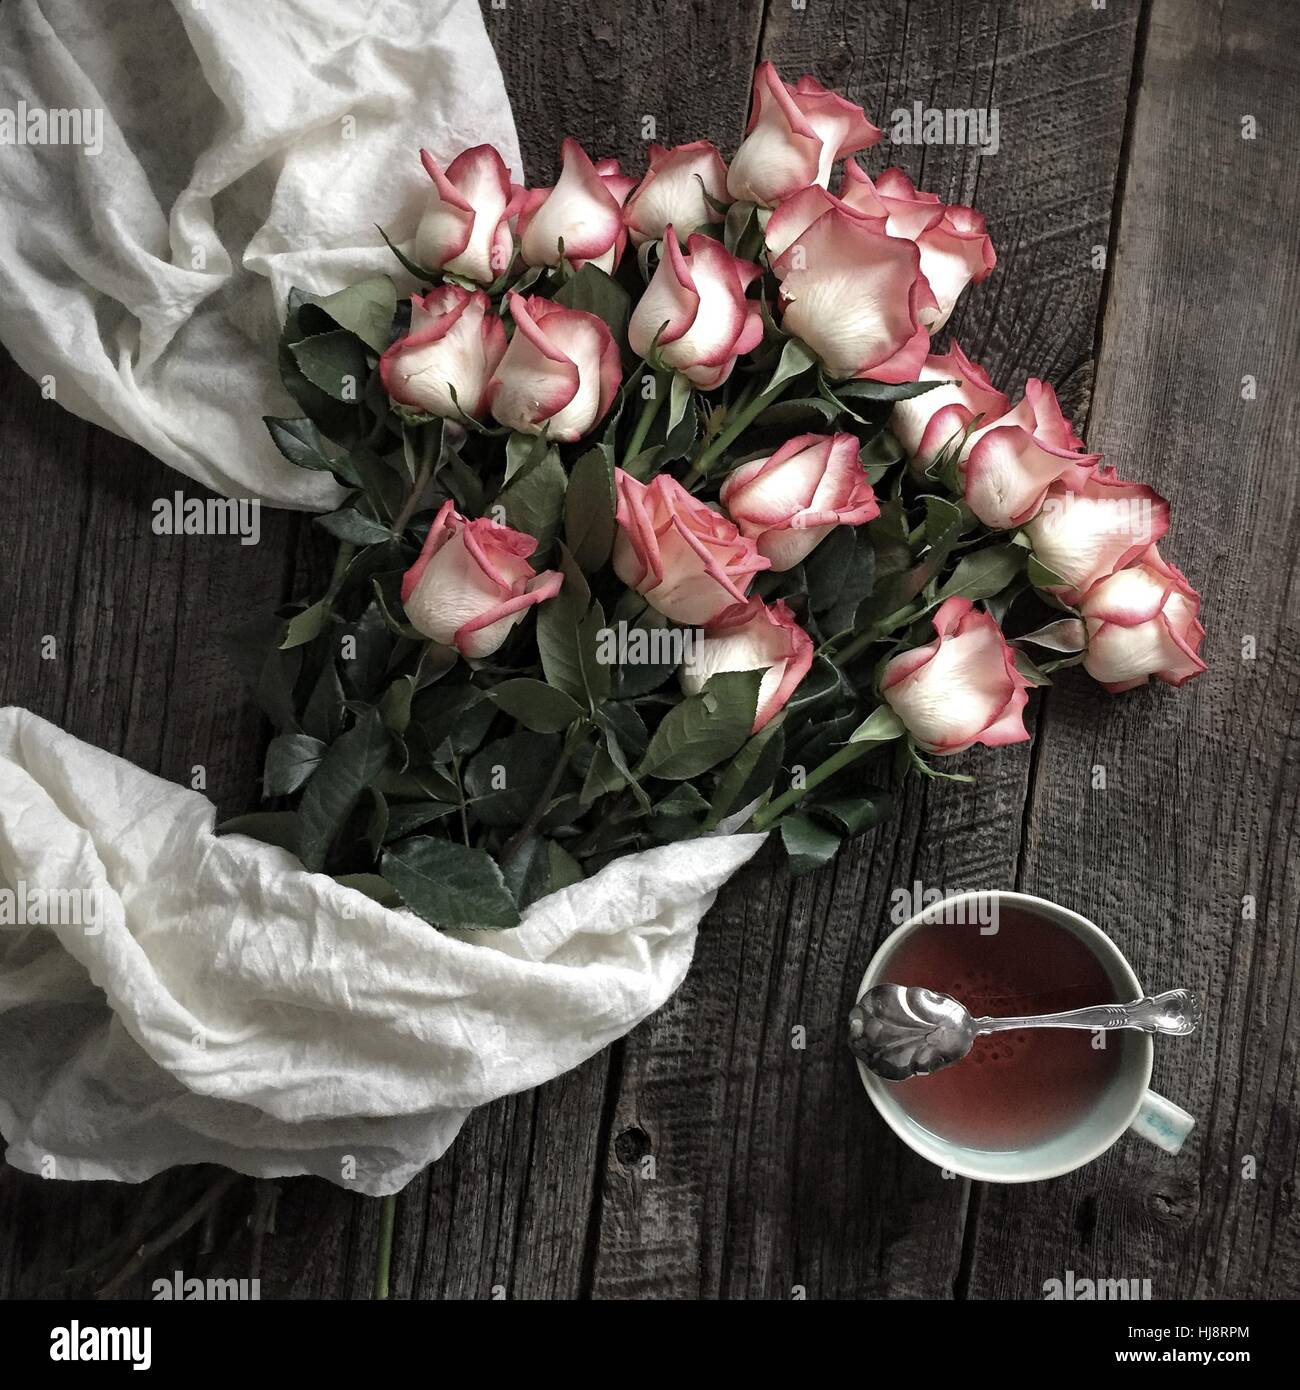 Bukett von Rosen und eine Tasse Tee mit einem weißen Schal Stockfoto